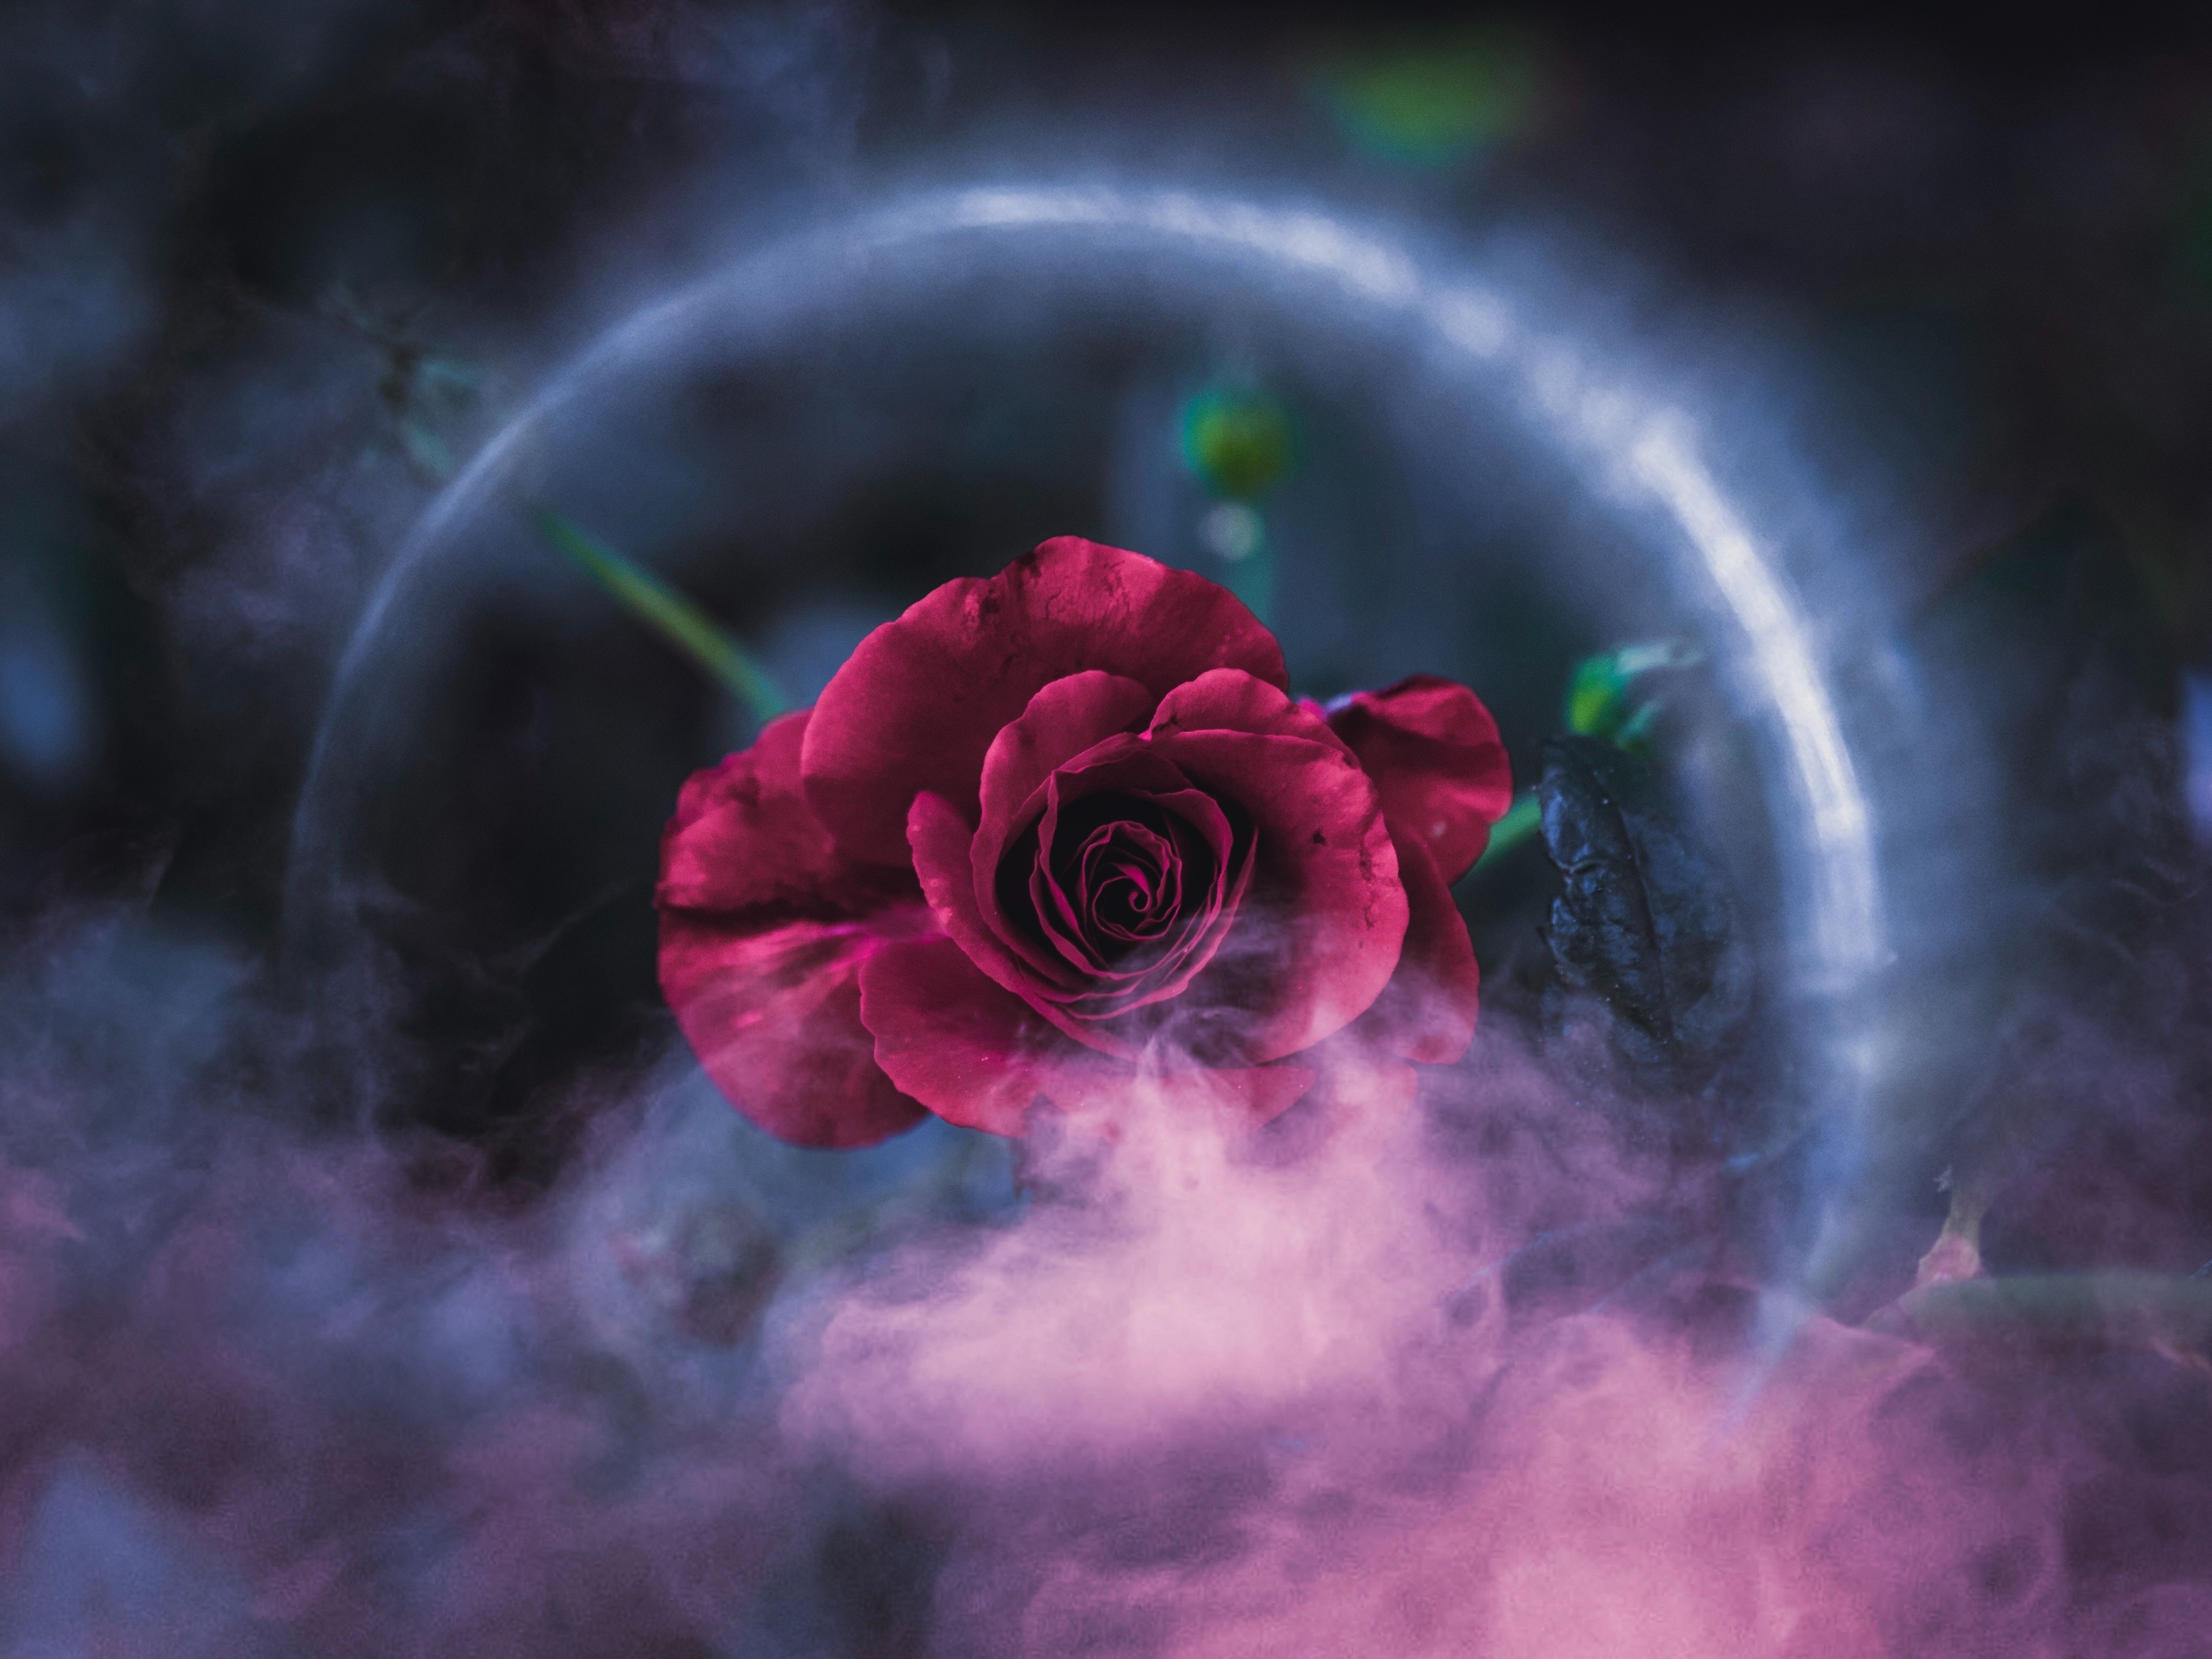 Rose Dreamy 4k, HD Flowers, 4k Wallpaper, Image, Background